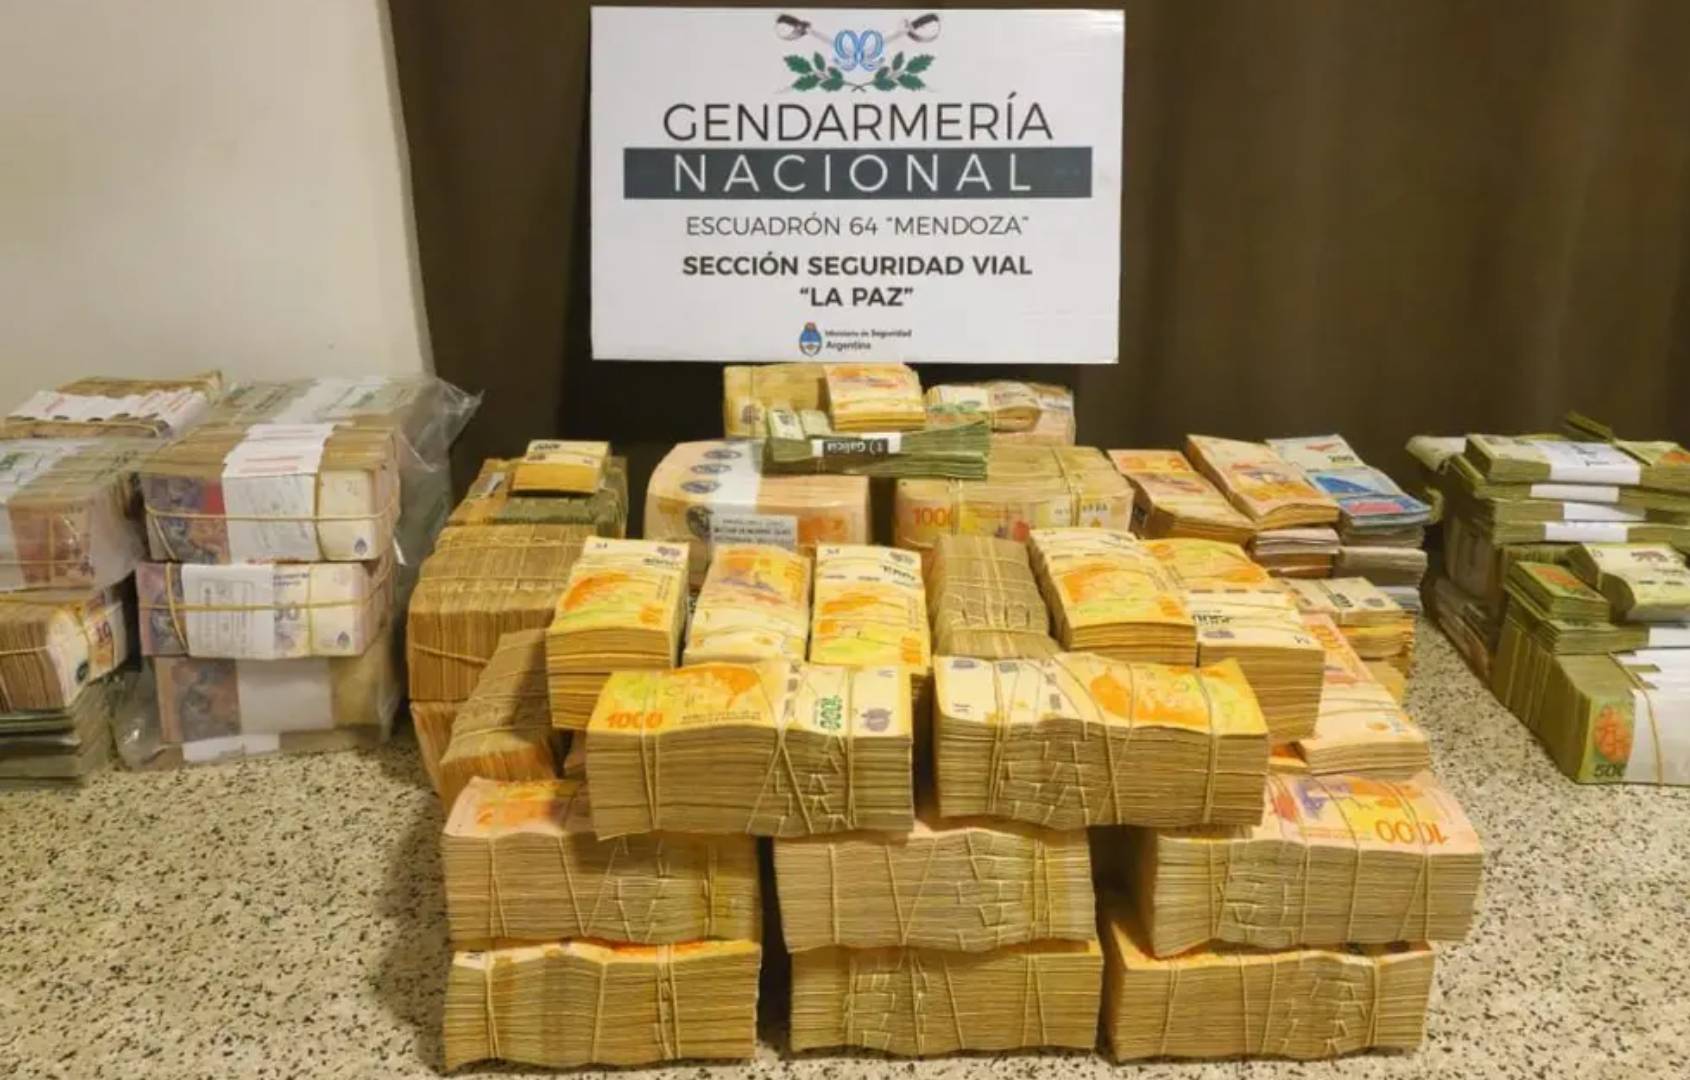 Gendarmería Detuvo A Un Camionero Que Viajaba A Mendoza Con 31 Millones De Pesos Escondidos En 